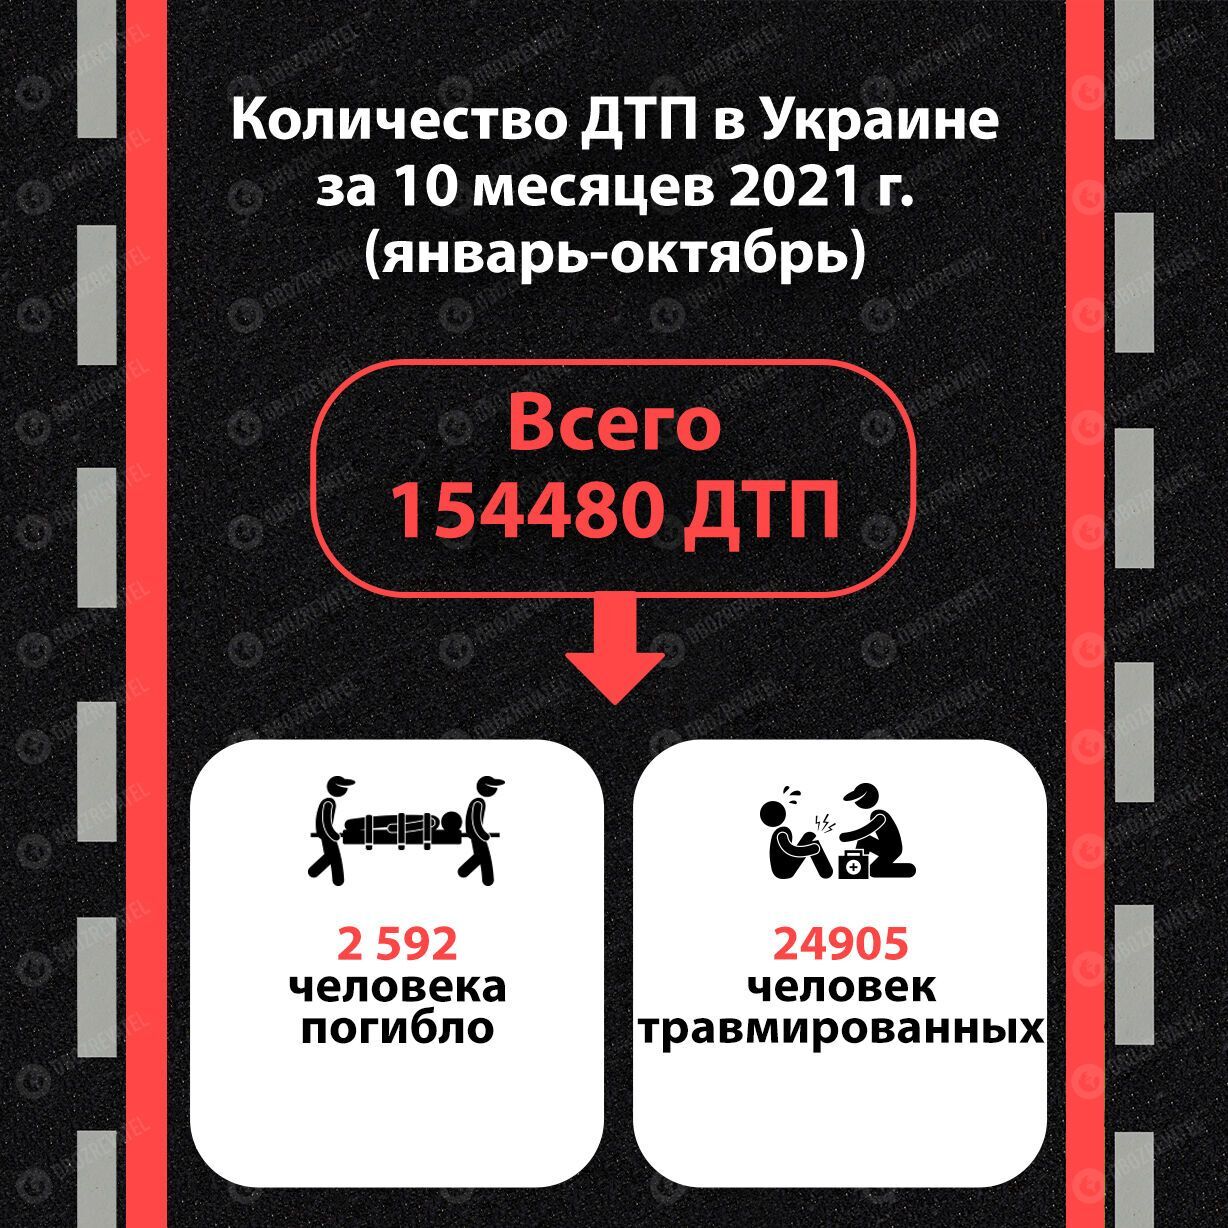 Количество ДТП в Украине за январь-октябрь 2021 года